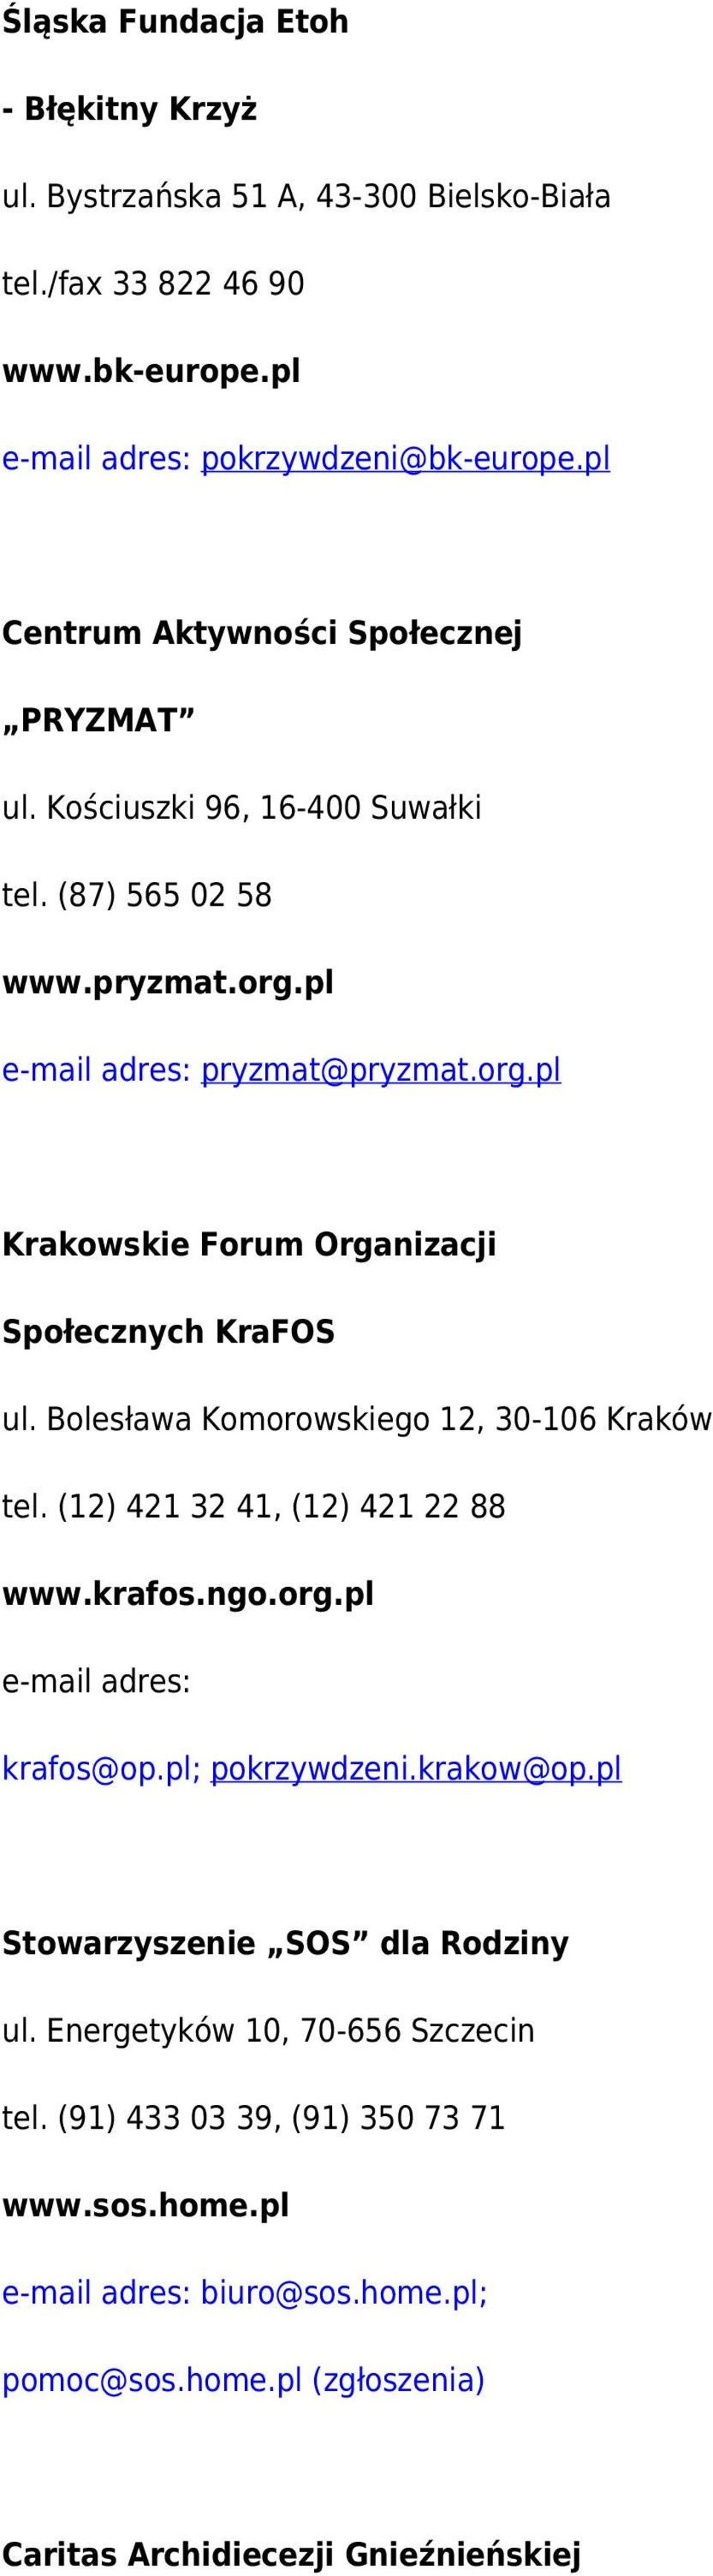 Bolesława Komorowskiego 12, 30-106 Kraków tel. (12) 421 32 41, (12) 421 22 88 www.krafos.ngo.org.pl e-mail adres: krafos@op.pl; pokrzywdzeni.krakow@op.